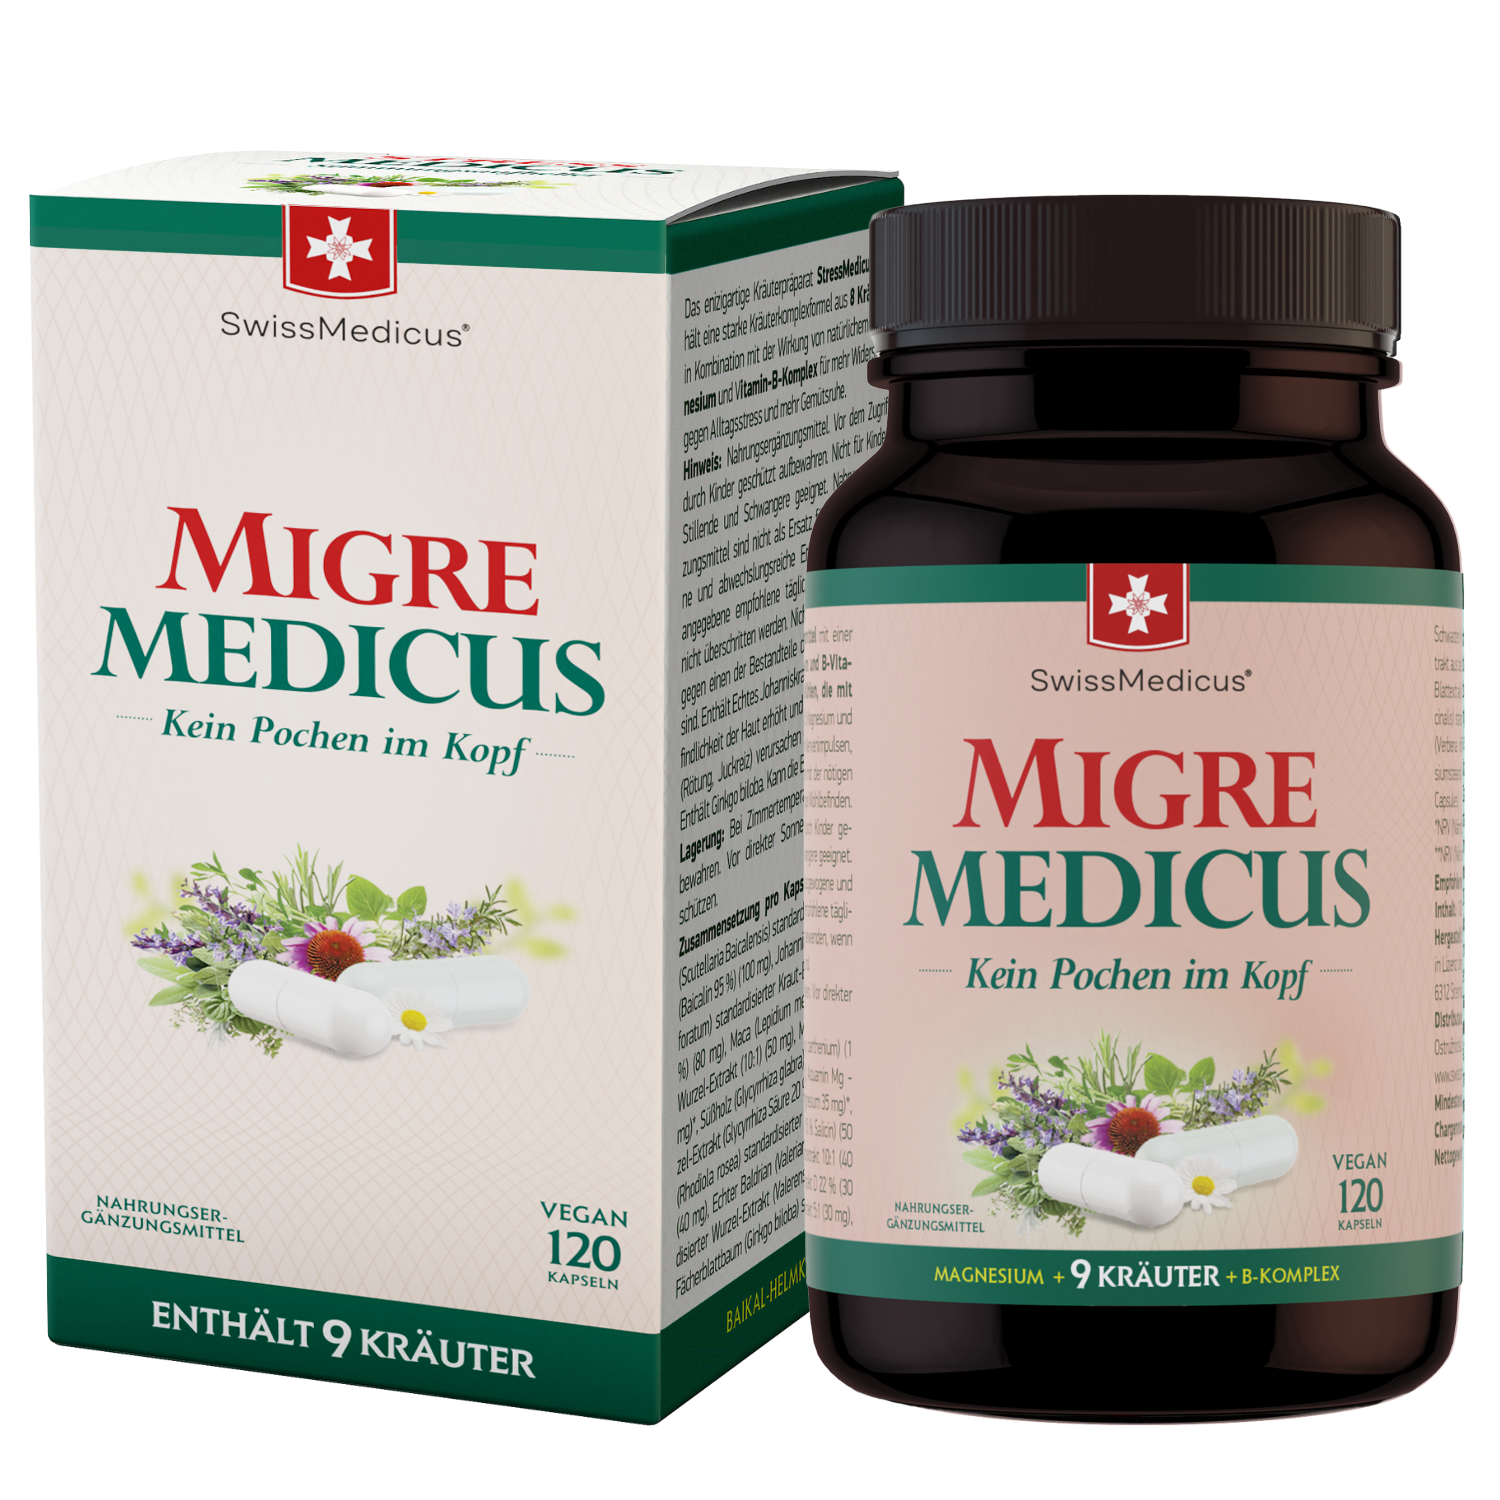 MigreMedicus 120 capsules